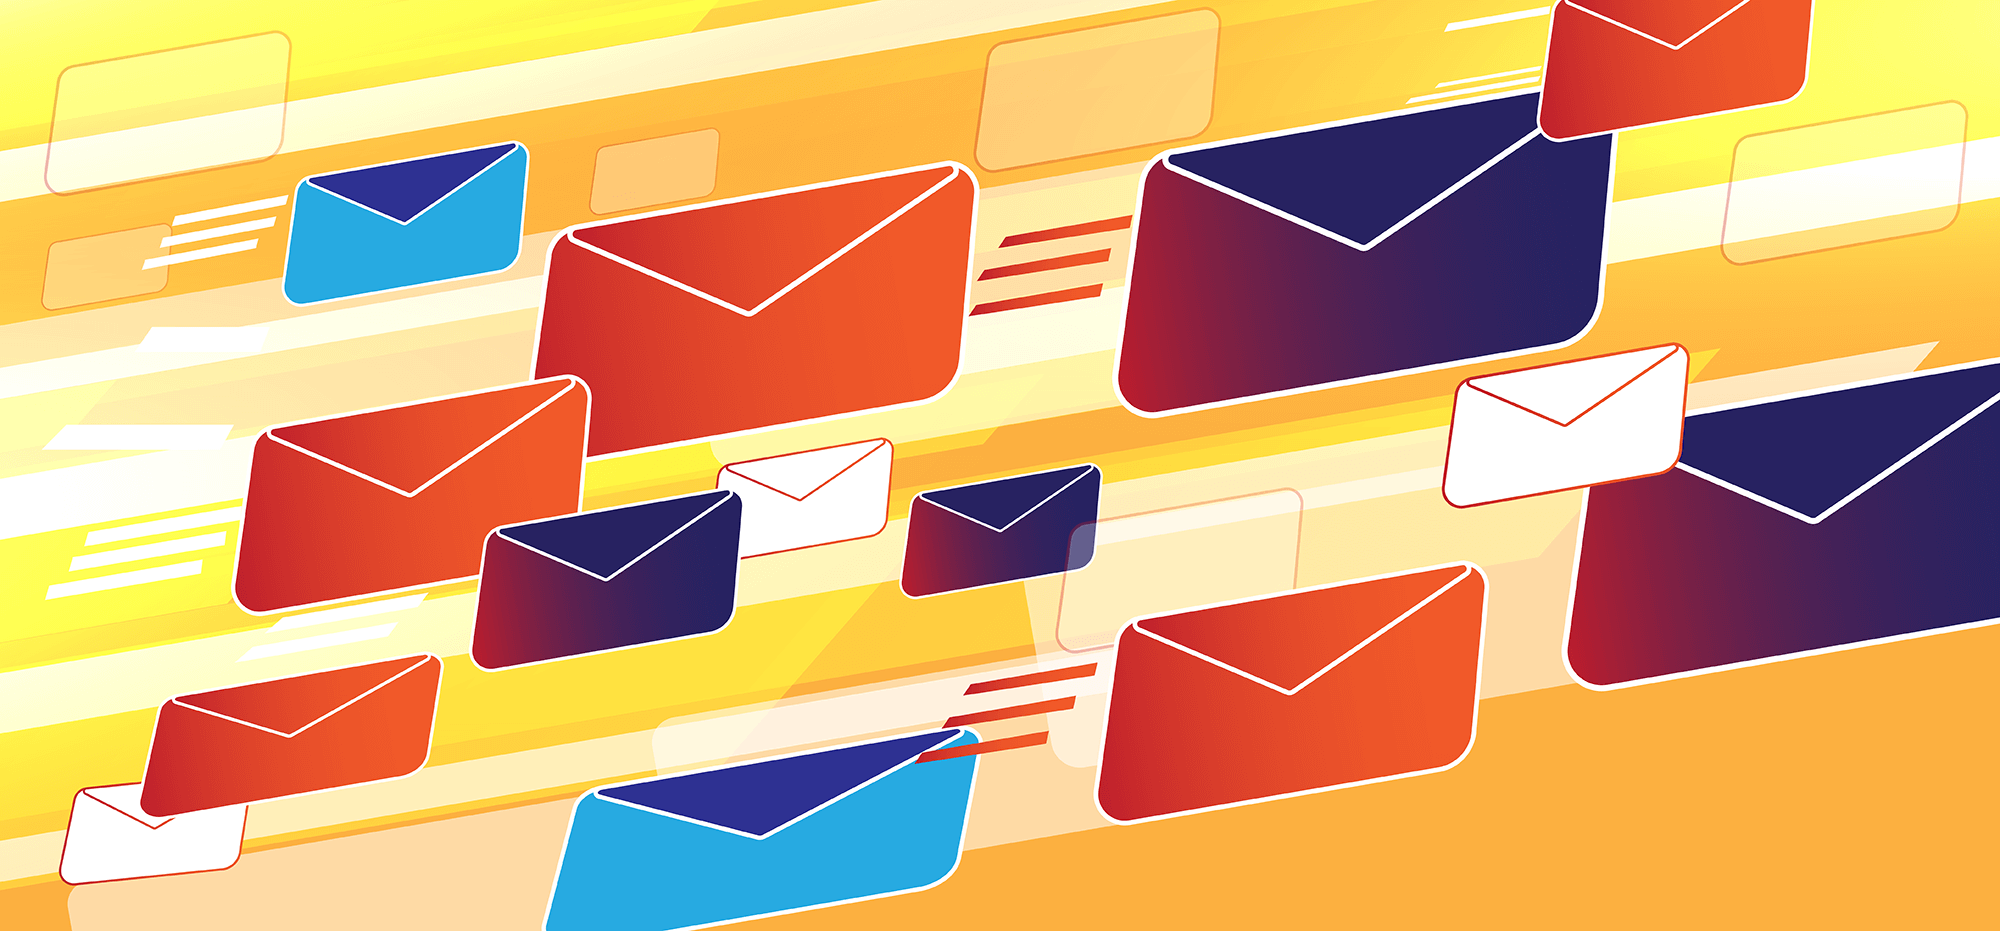 Snellere mailafhandeling en betere bescherming van mail